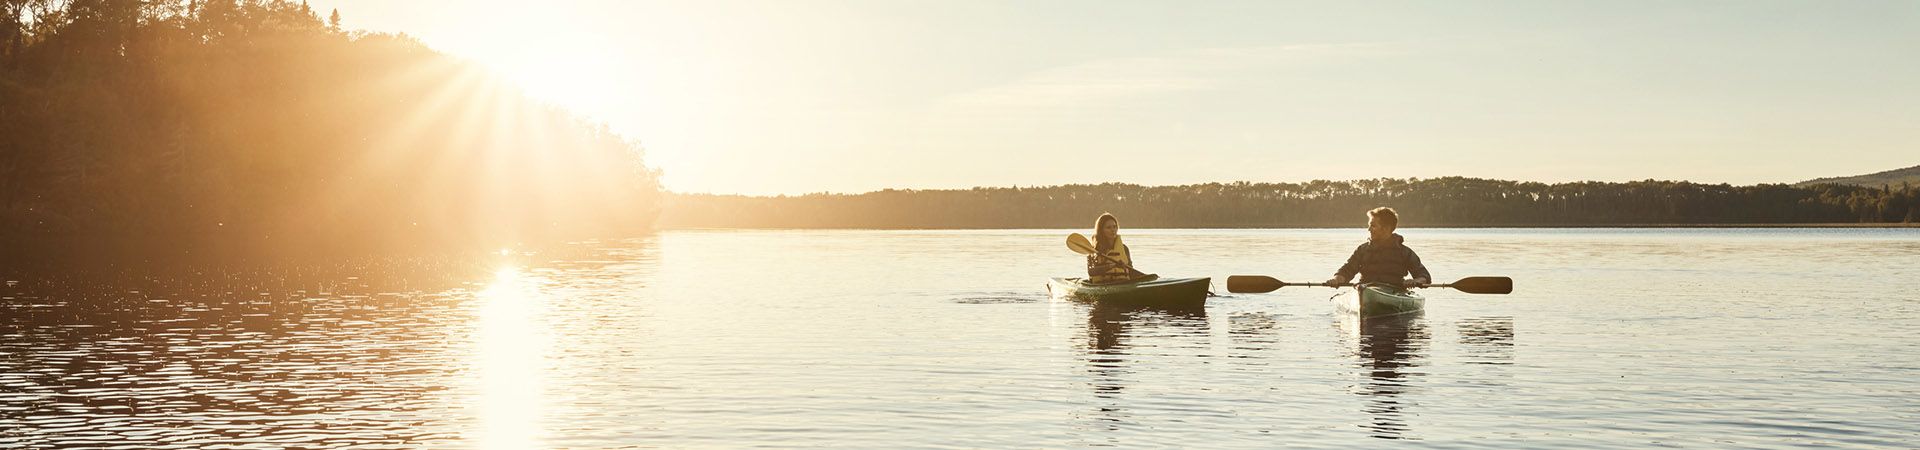 Kanoën – Jong stel in eenpersoonskano’s op een meer.